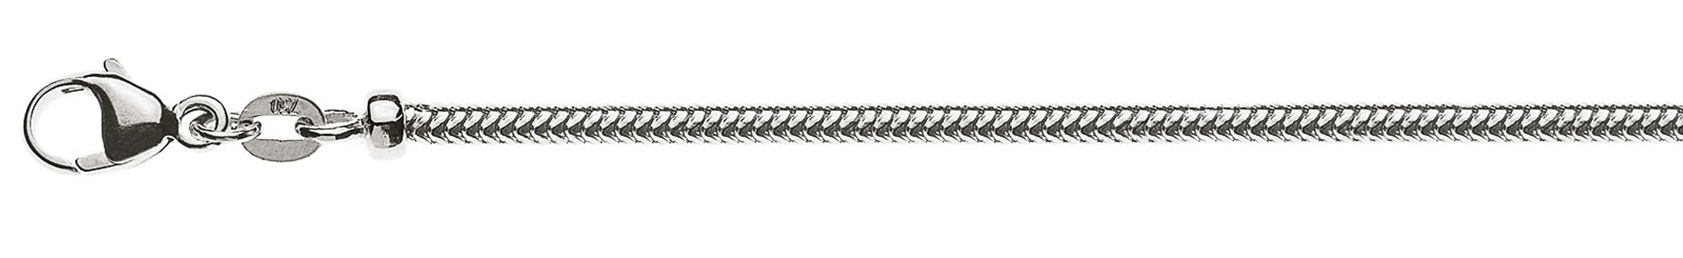 AURONOS Prestige Collier en or blanc 18K, chaîne serpent 50cm 2.4mm